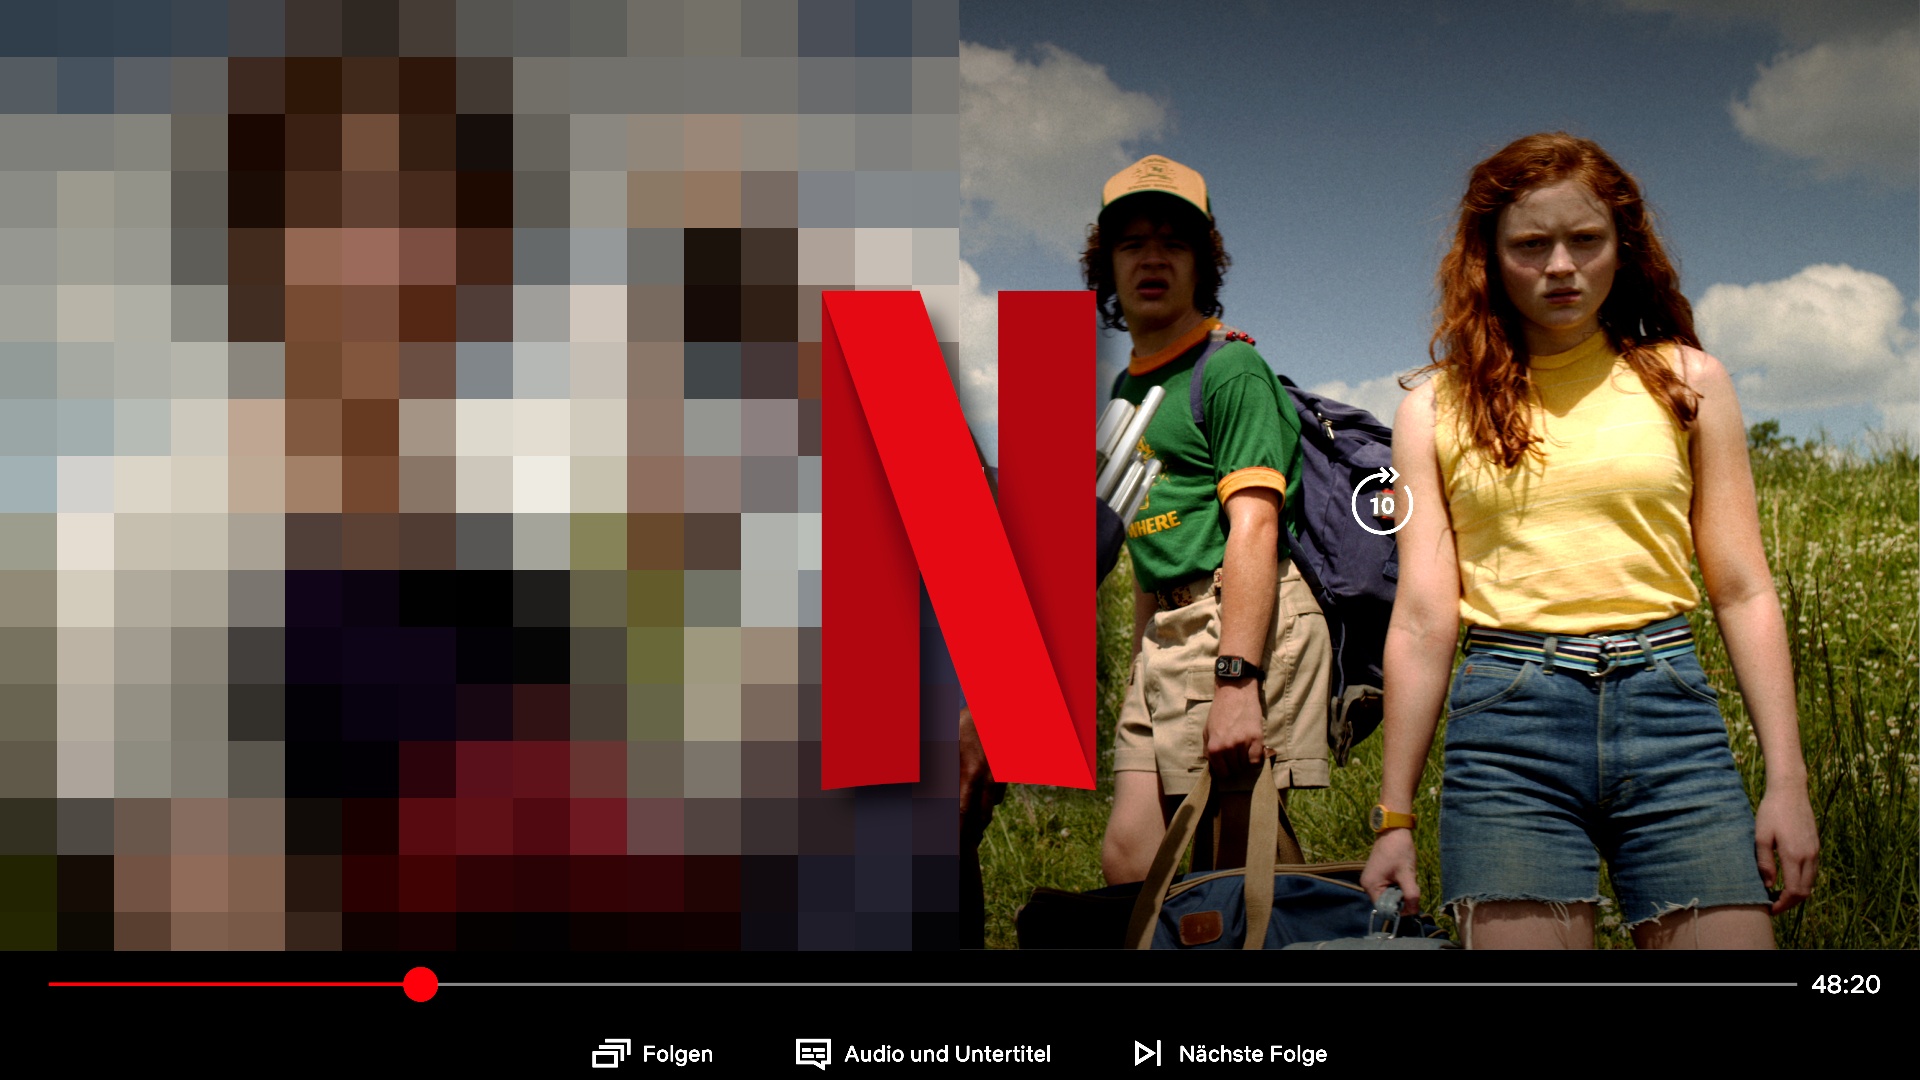 #Netflix in schlechter Auflösung: Echter Spartipp oder totaler Reinfall? Unser Check